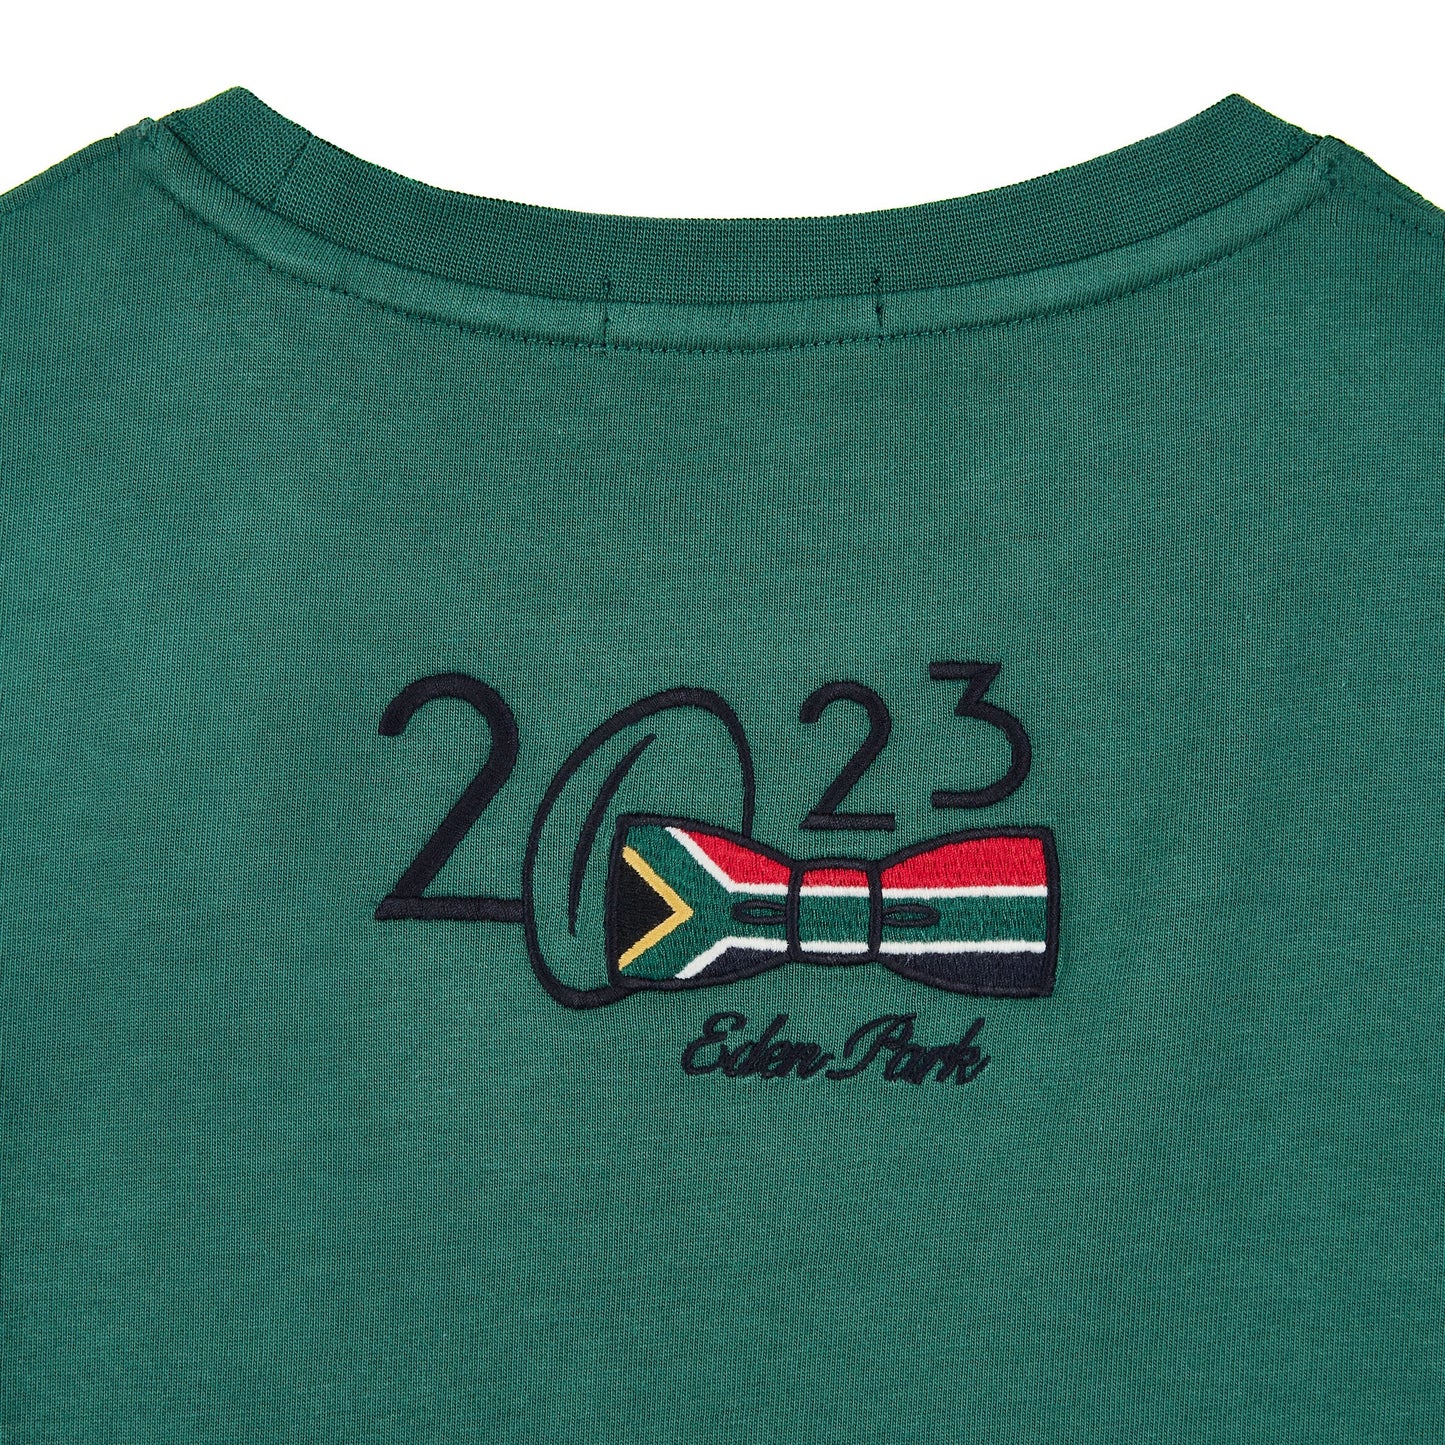 T-shirt enfant manches courtes vert - Afrique du sud